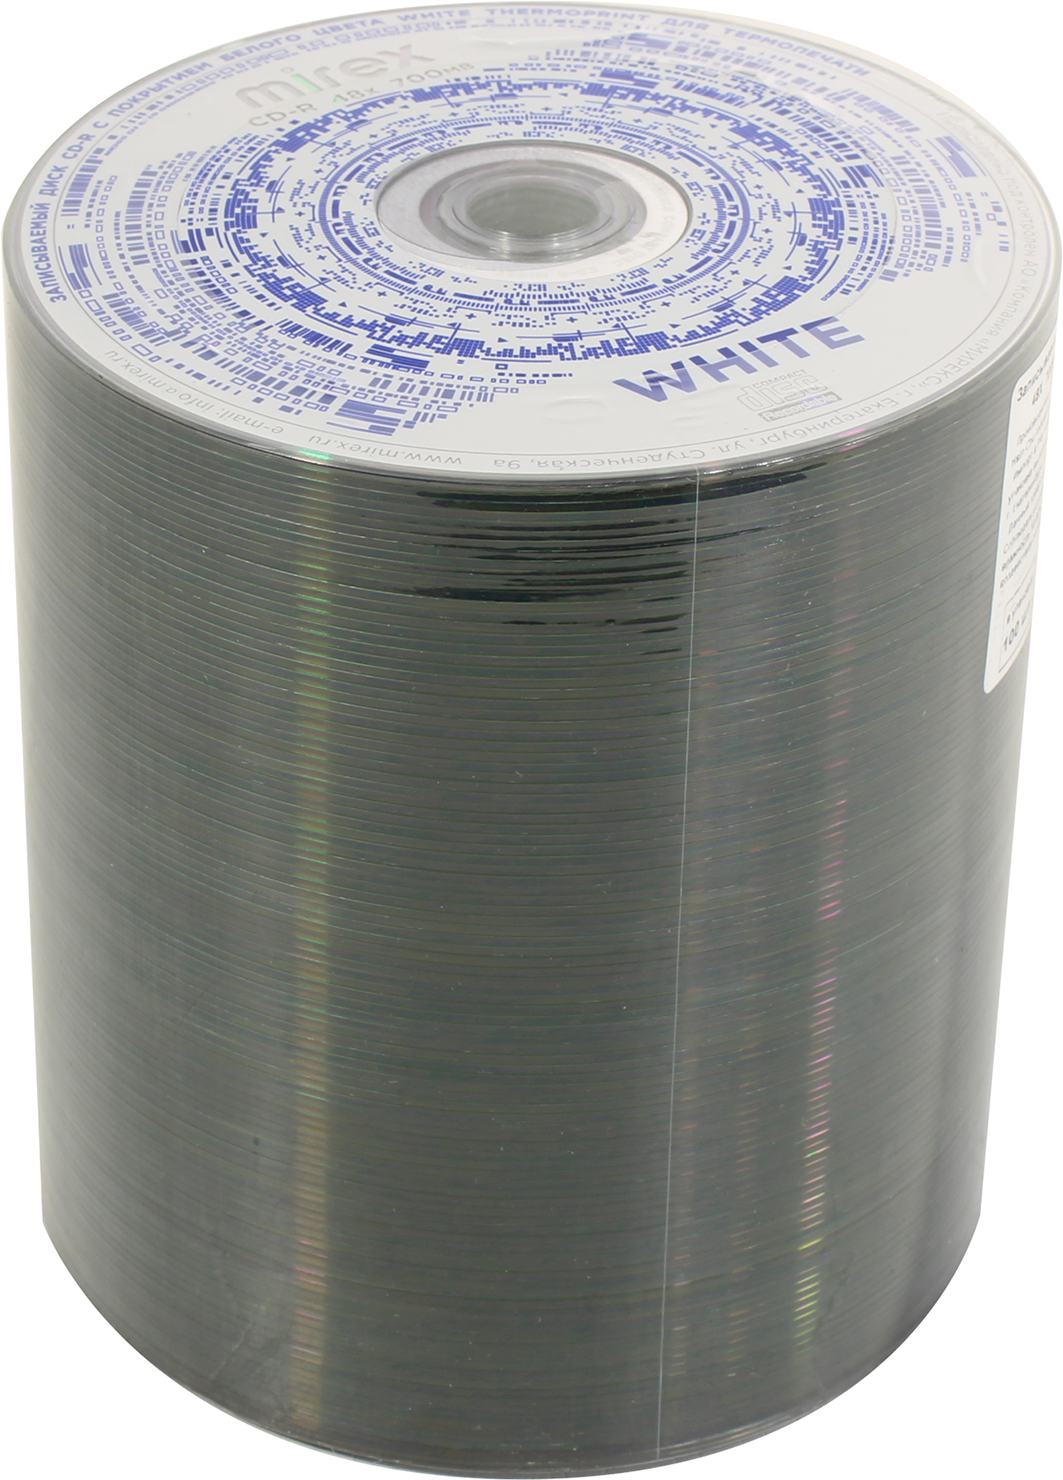 Диск Mirex CD-R, 700Mb, 48x, термопленка, 100 шт, Printable (200895)